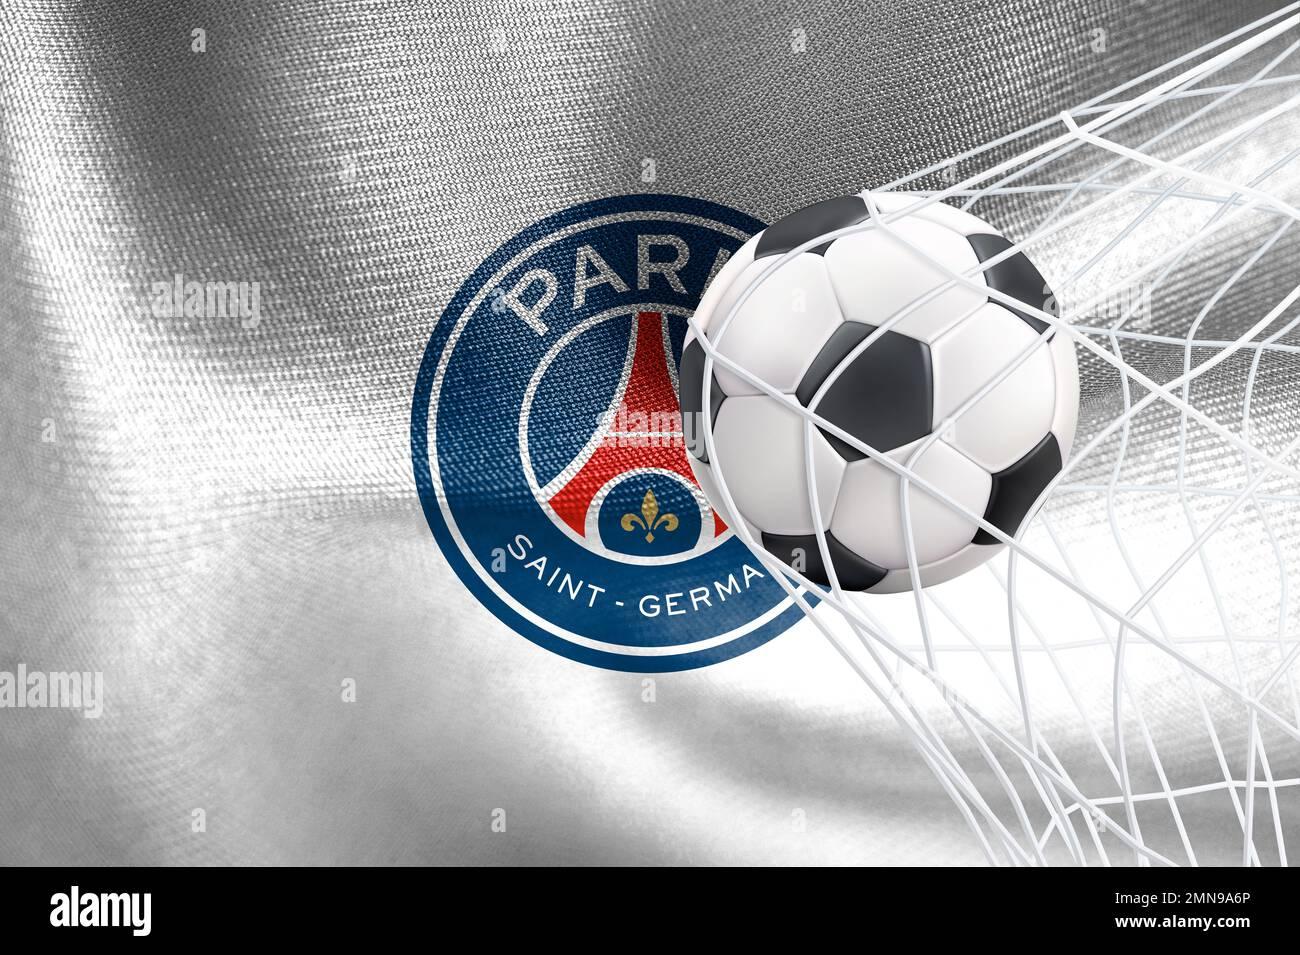 UEFA Champions League Paris Saint Germain FC flag with a